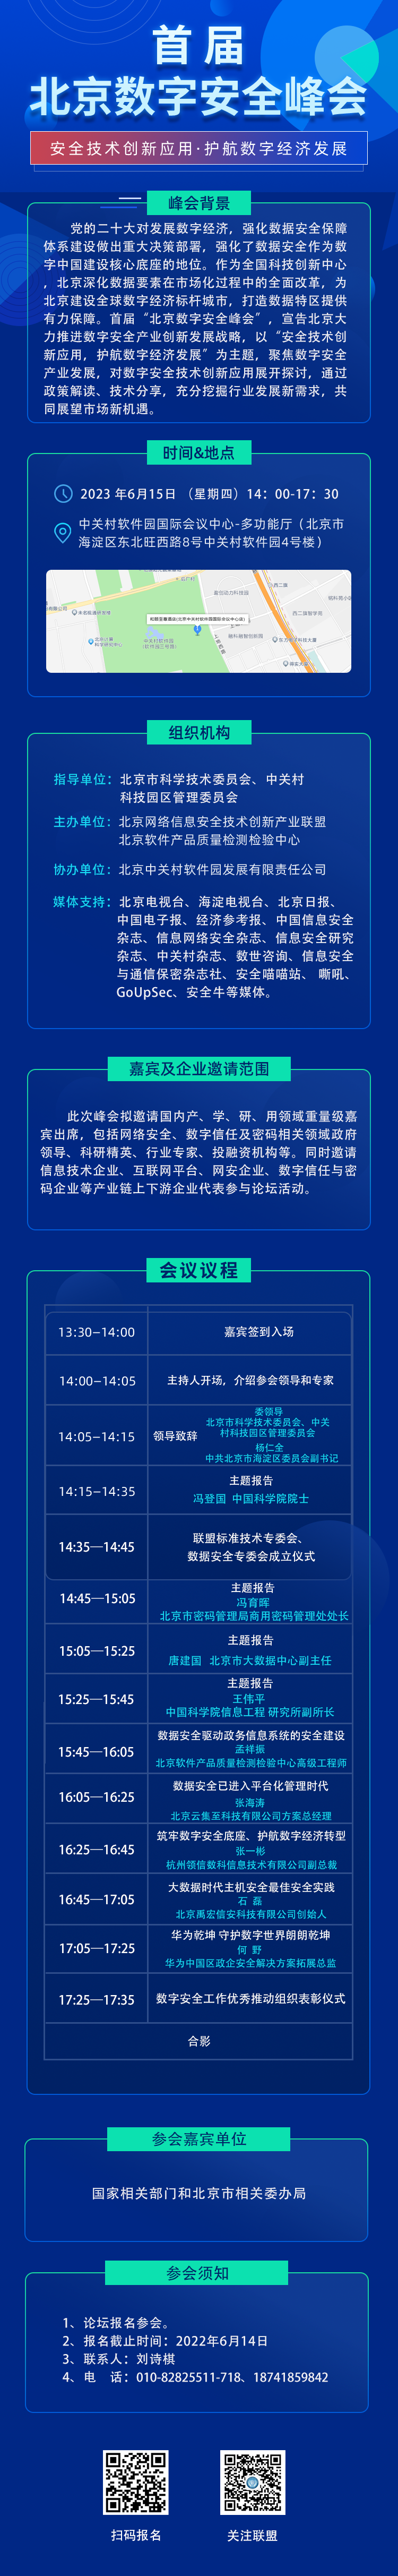 【会议通知】首届北京数字安全峰会将于6月15日在中关村软件园国际会议中心举办！